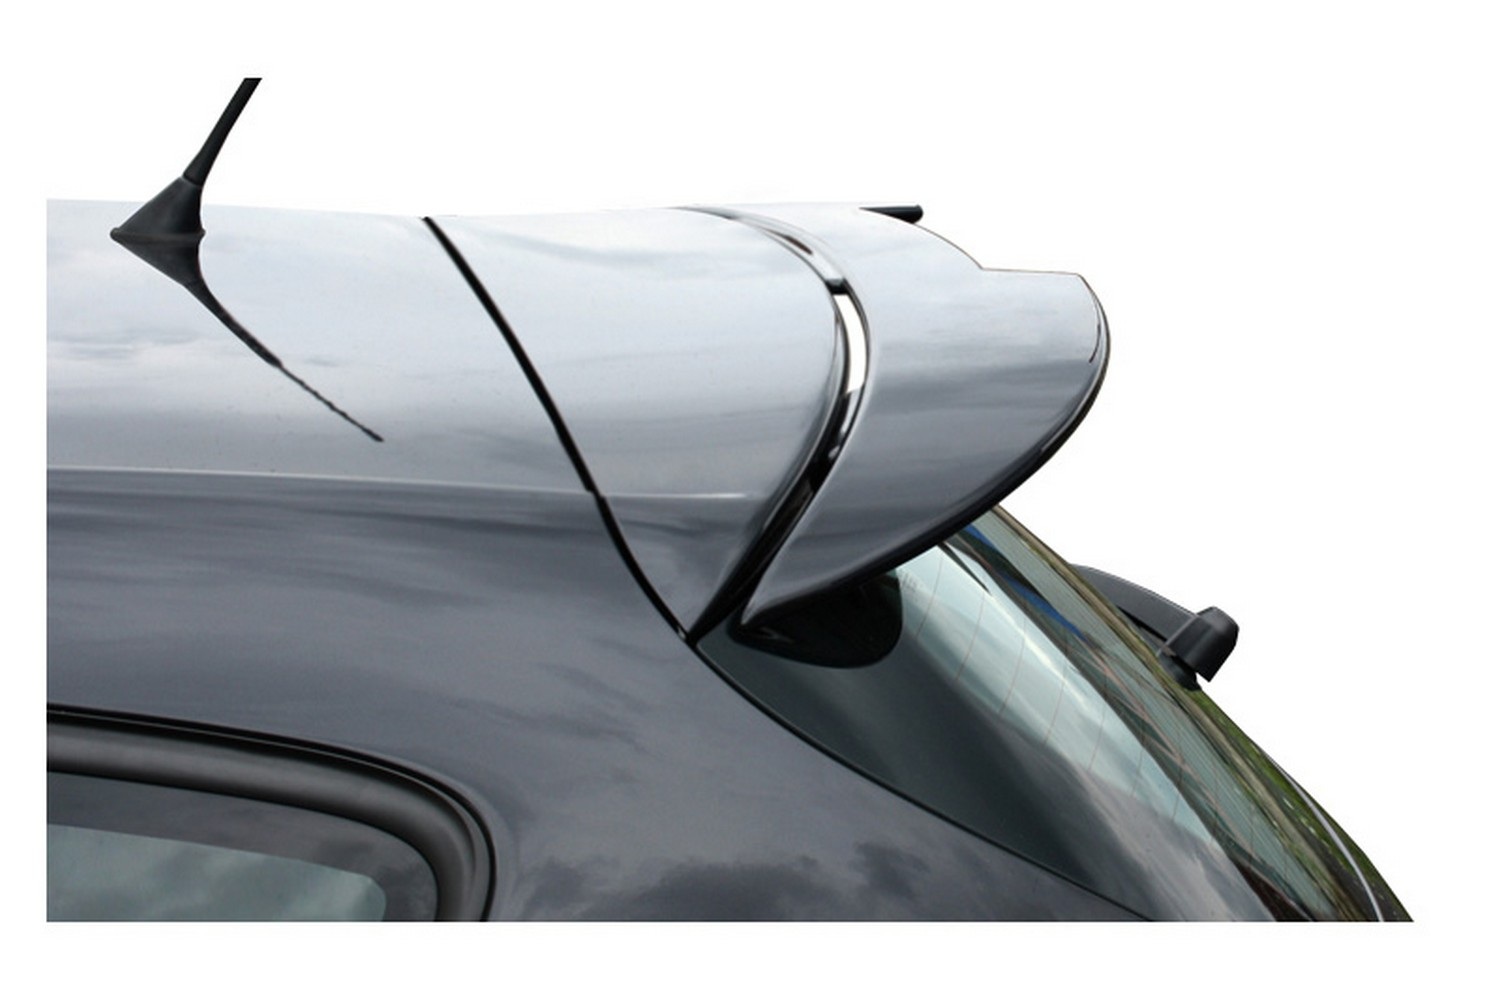 Roof spoiler Seat Leon (1P facelift) 2009-2012 3 & 5-door hatchback